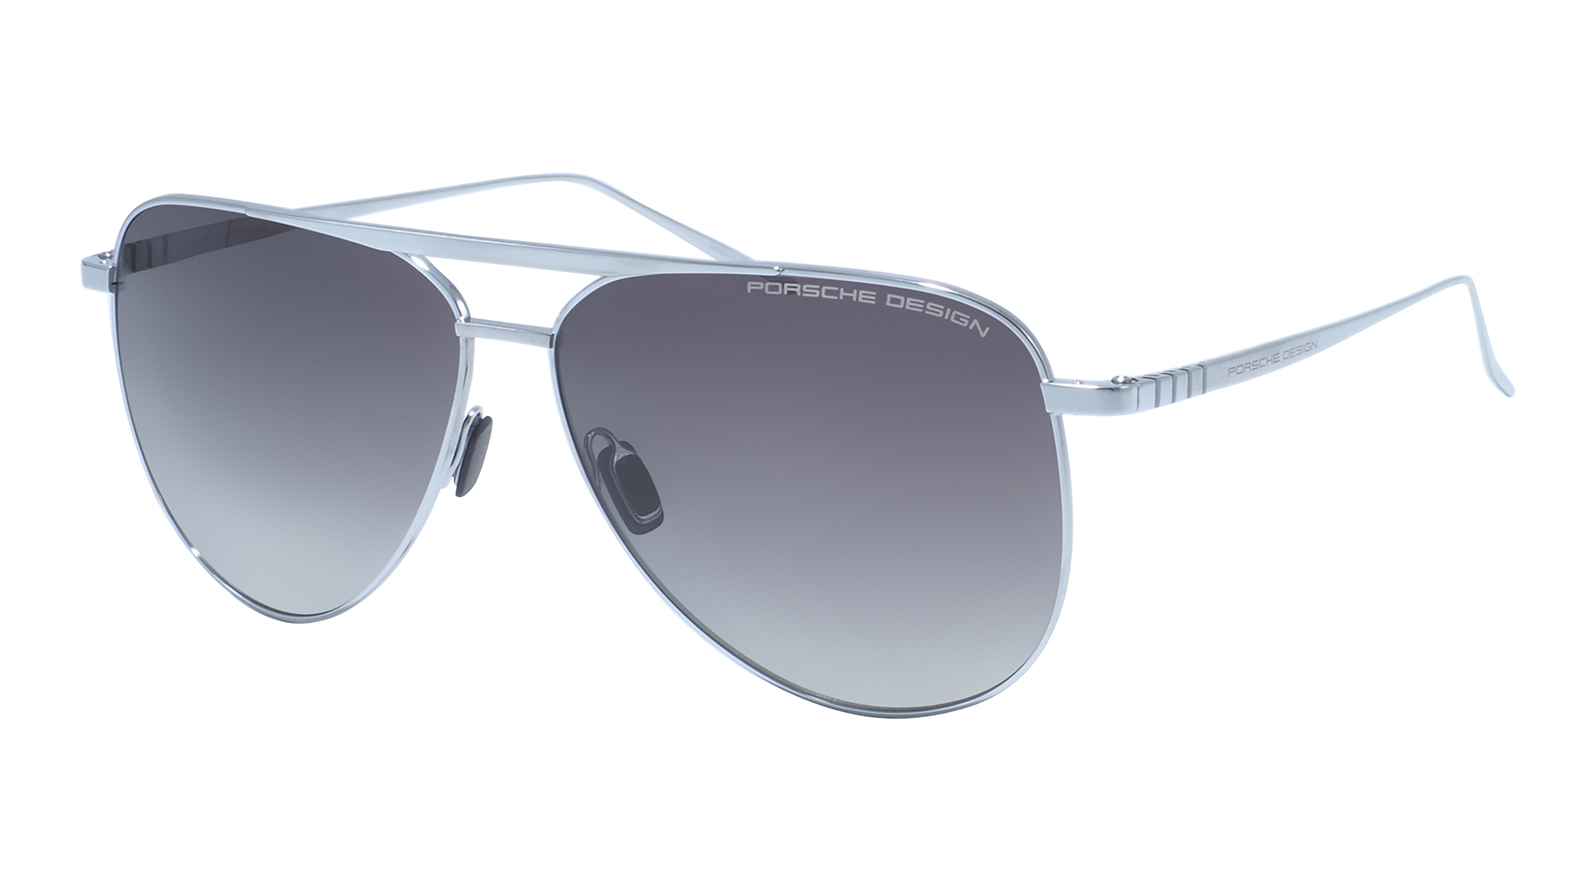 Porsche Design 8929 C мужские поляризованные солнцезащитные очки солнцезащитные очки для рыбалки поляризованные очки с защитой от ультрафиолета